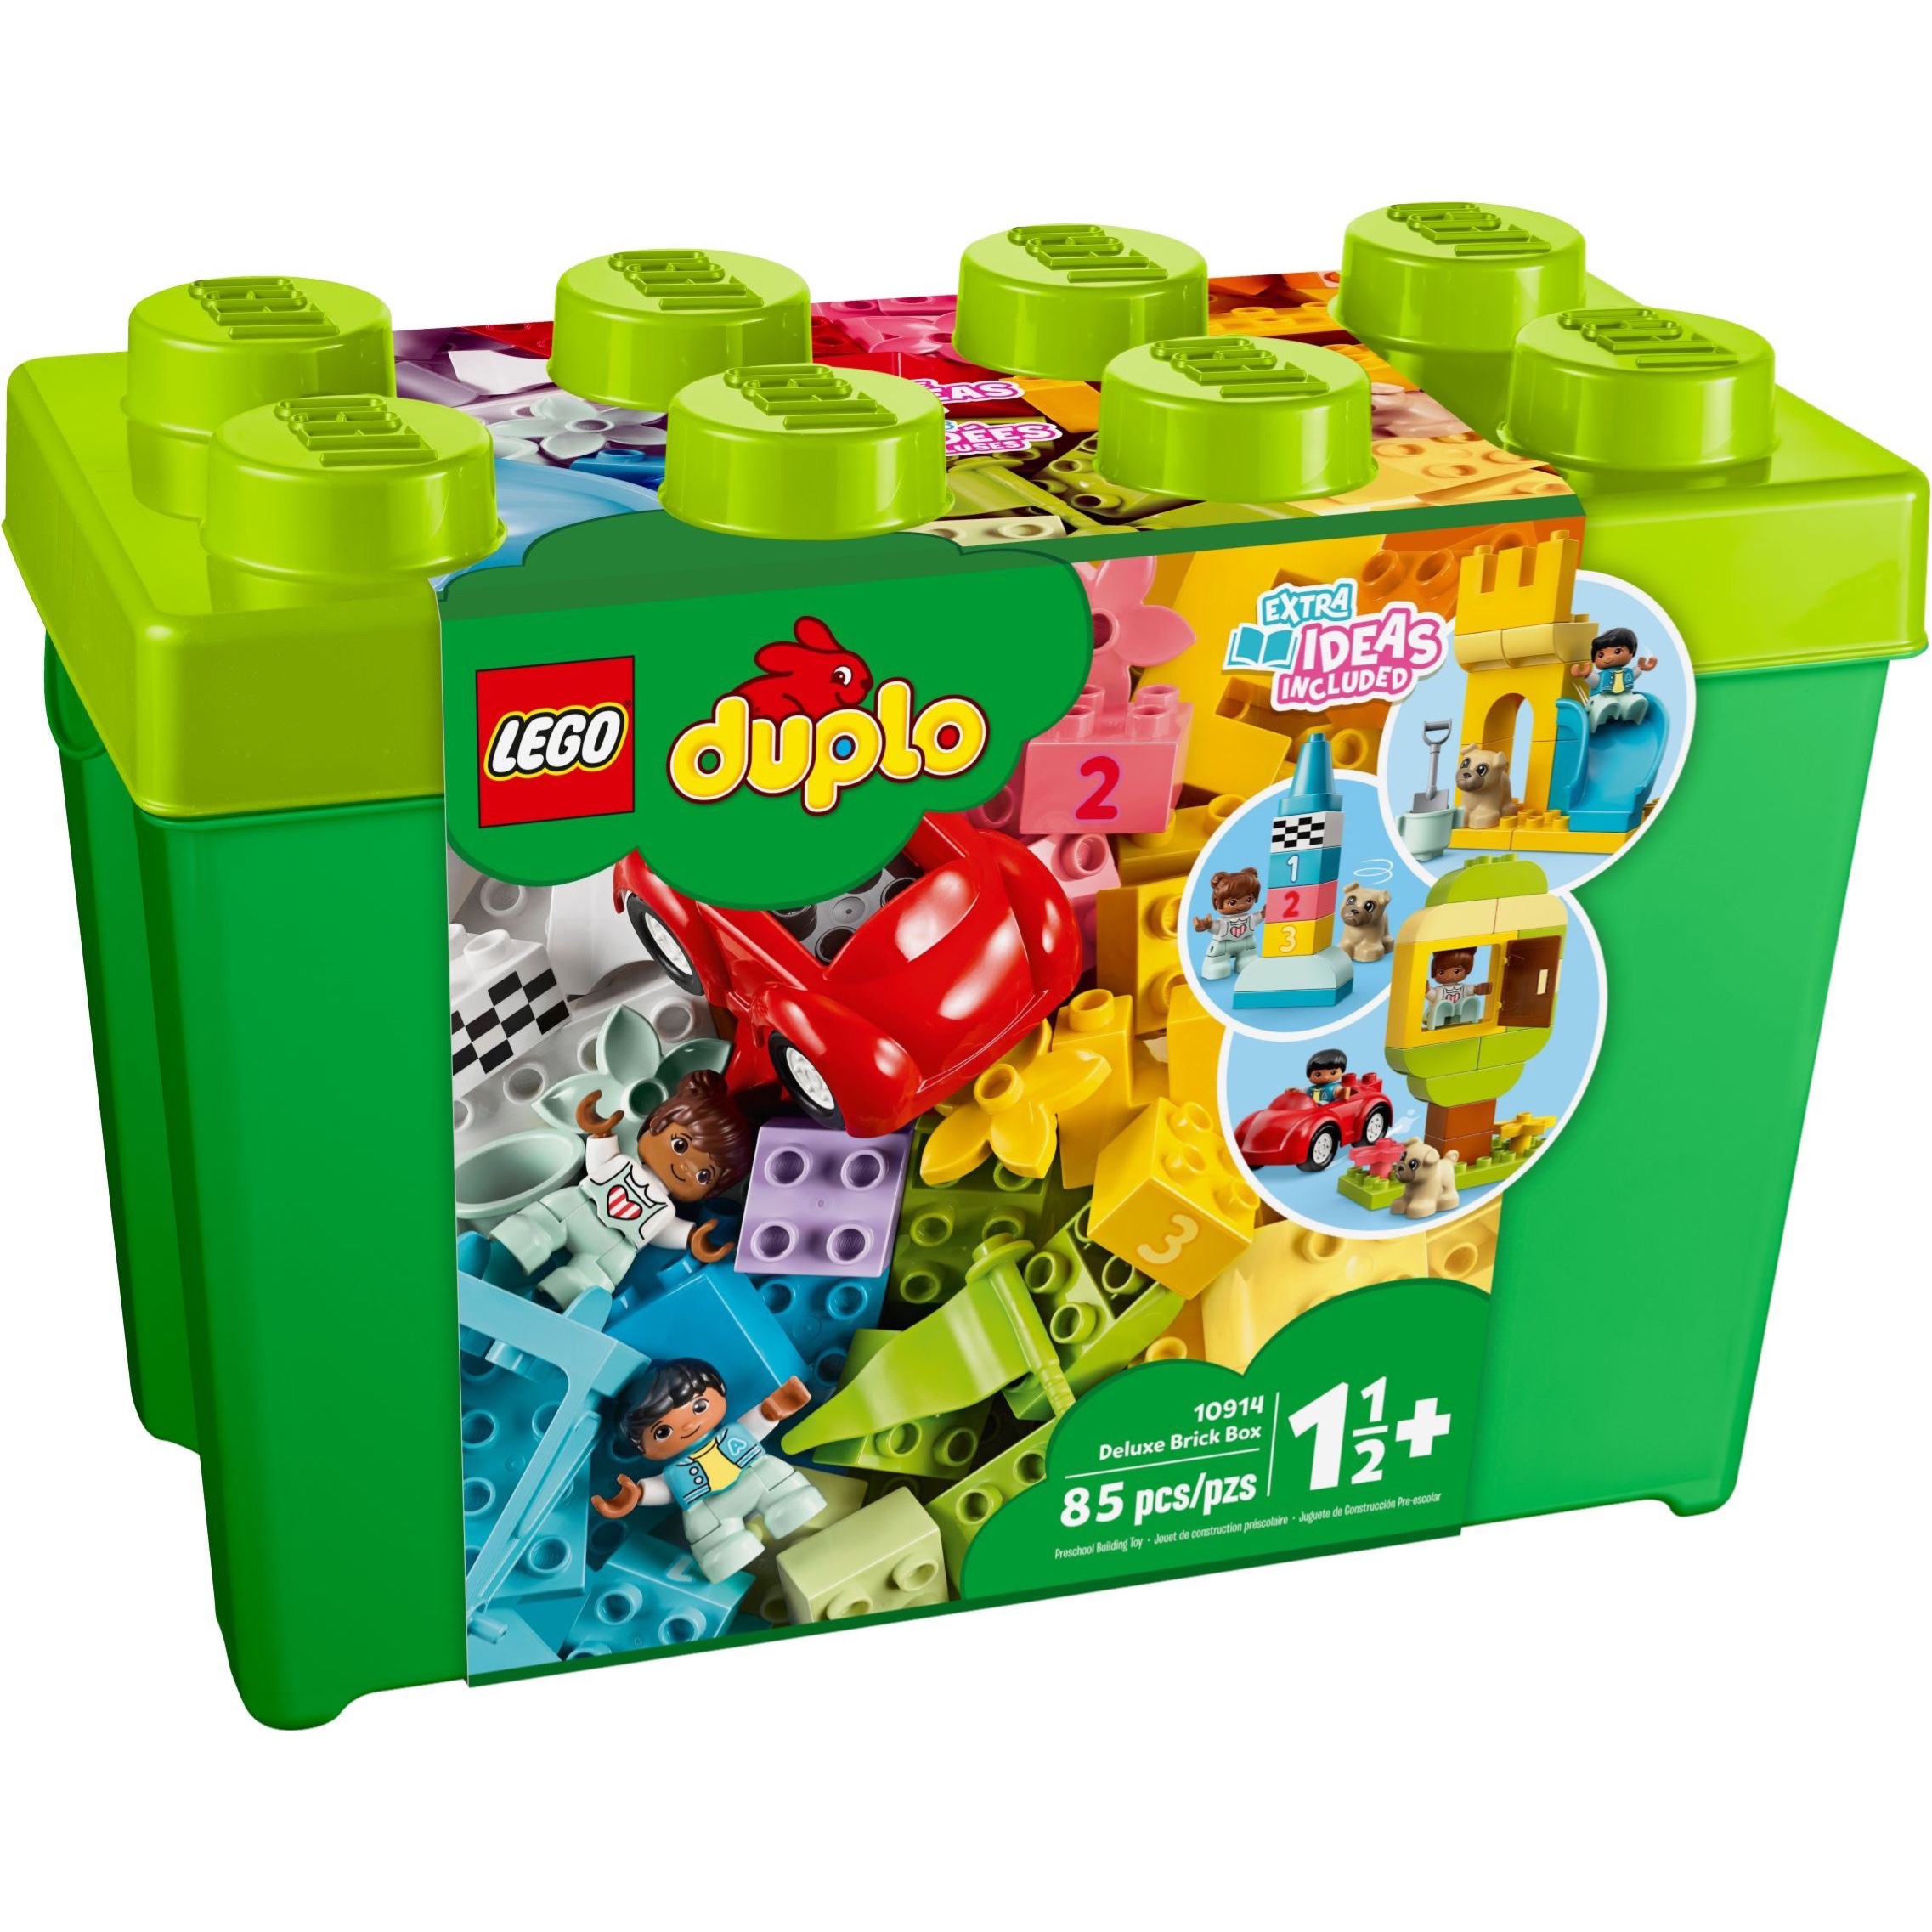 LEGO乐高 10914 豪华缤纷桶 玩具/童车/益智/积木/模型 普通塑料积木 原图主图